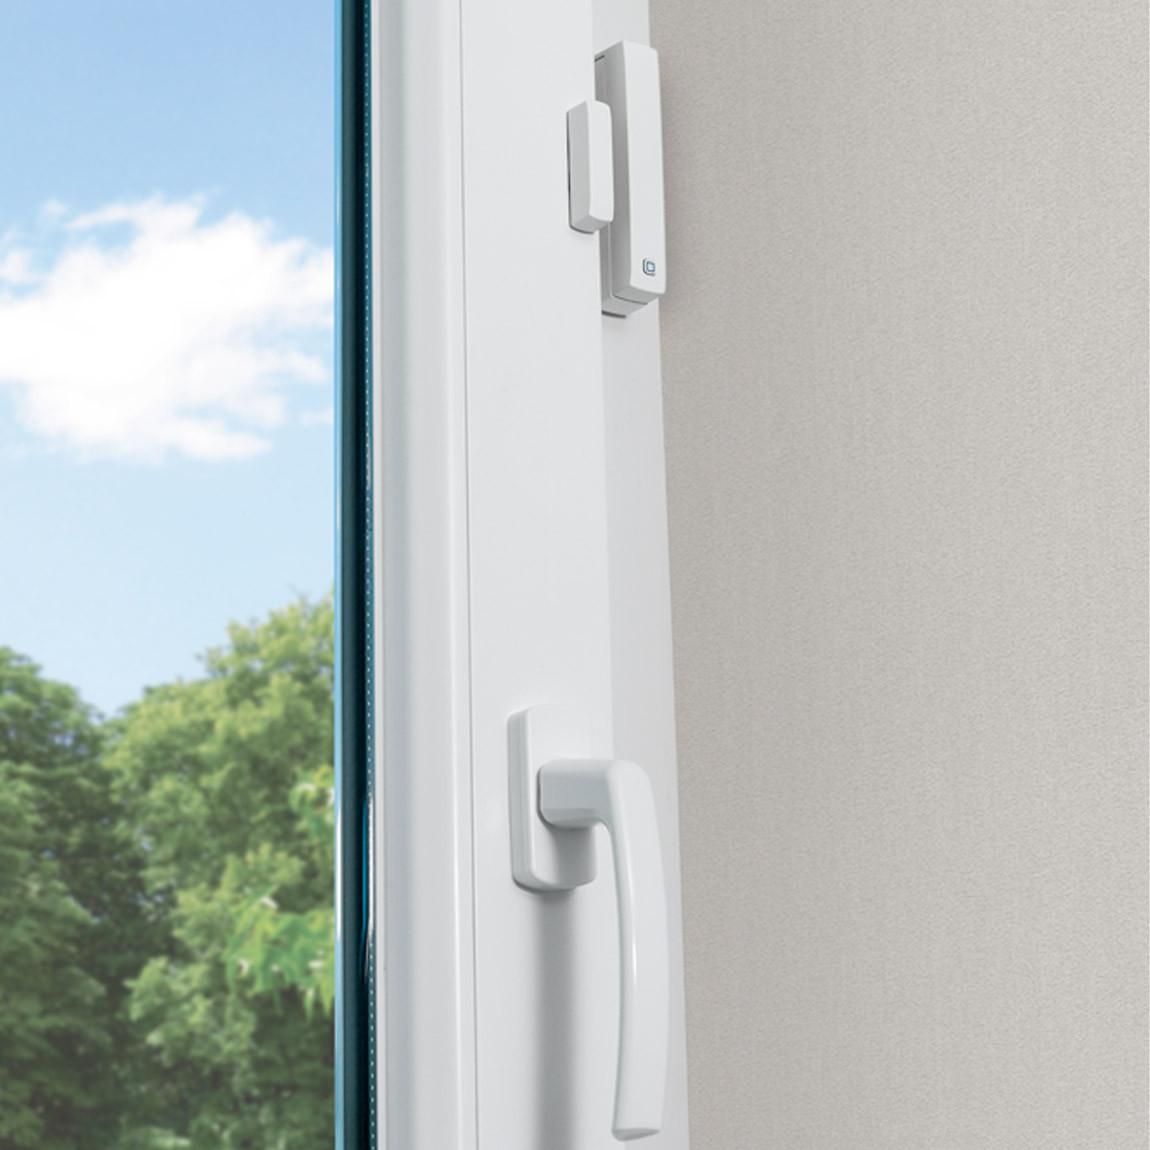 Homematic IP Tür und Fensterkontakt am Fenster